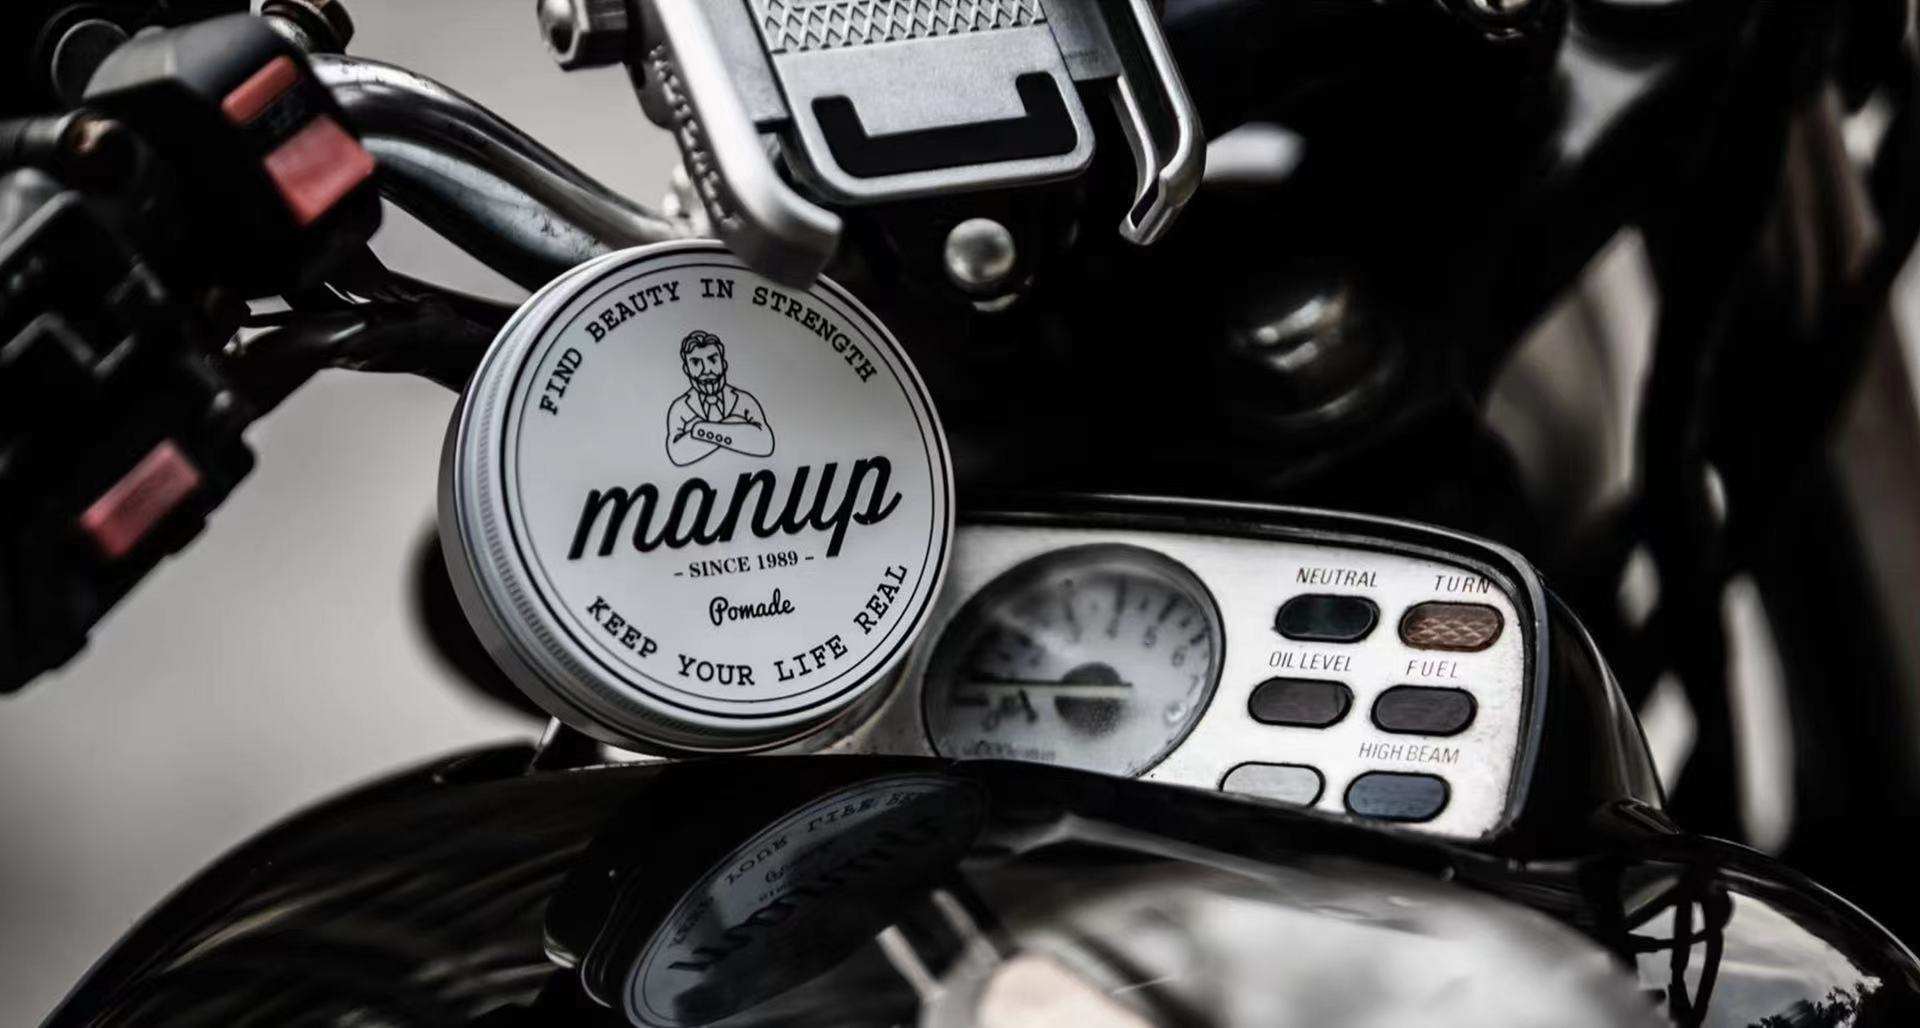 36氪首发 | 男士理容品牌「MANUP理派」完成种子轮融资，从Barbershop切入男士生活方式市场